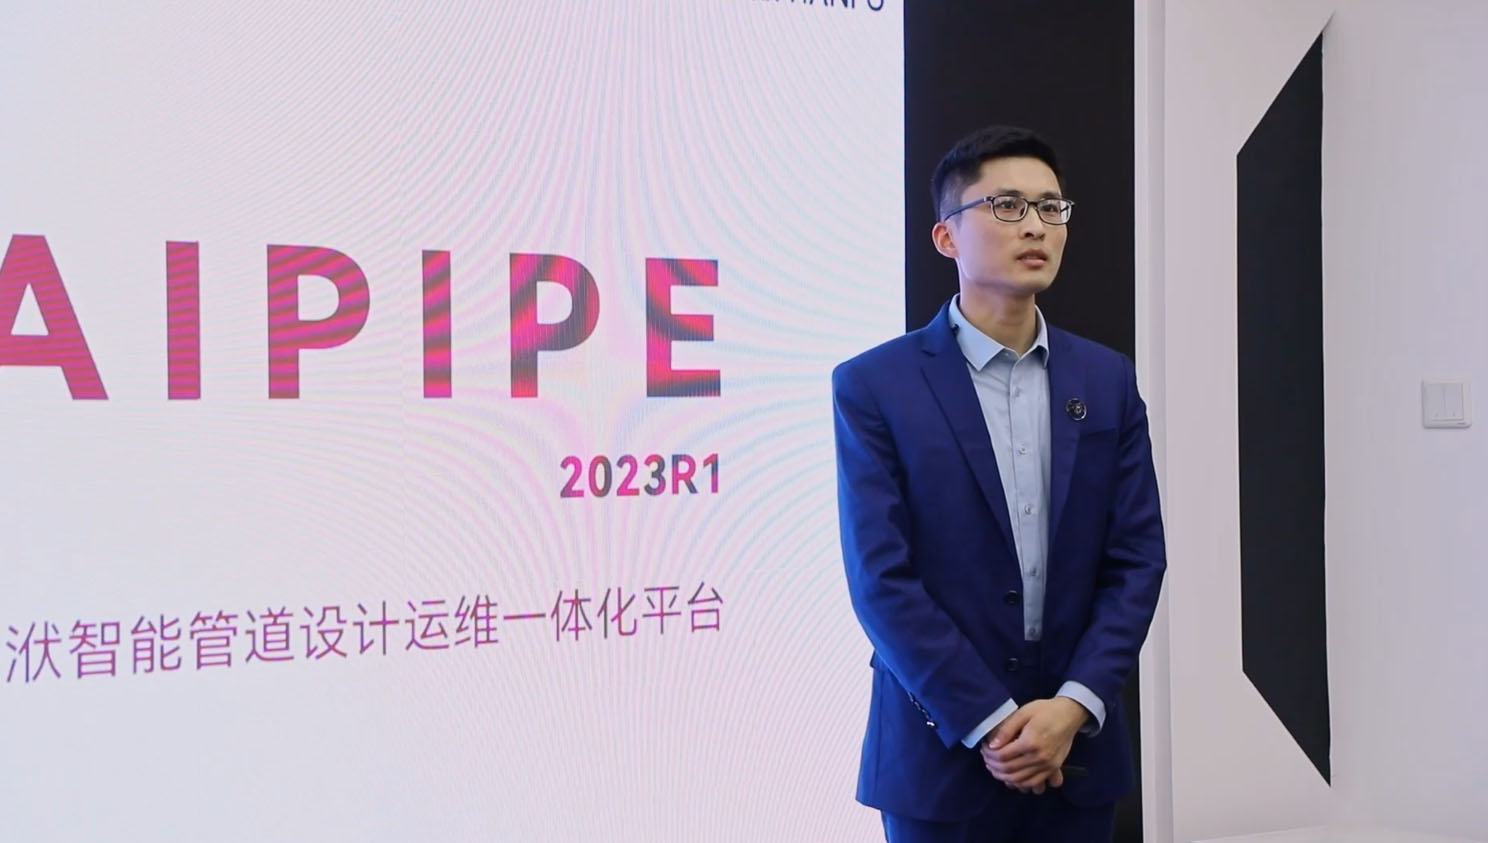 智能管道设计运维一体化平台 - AIPIPE 2023R1版本新功能详解